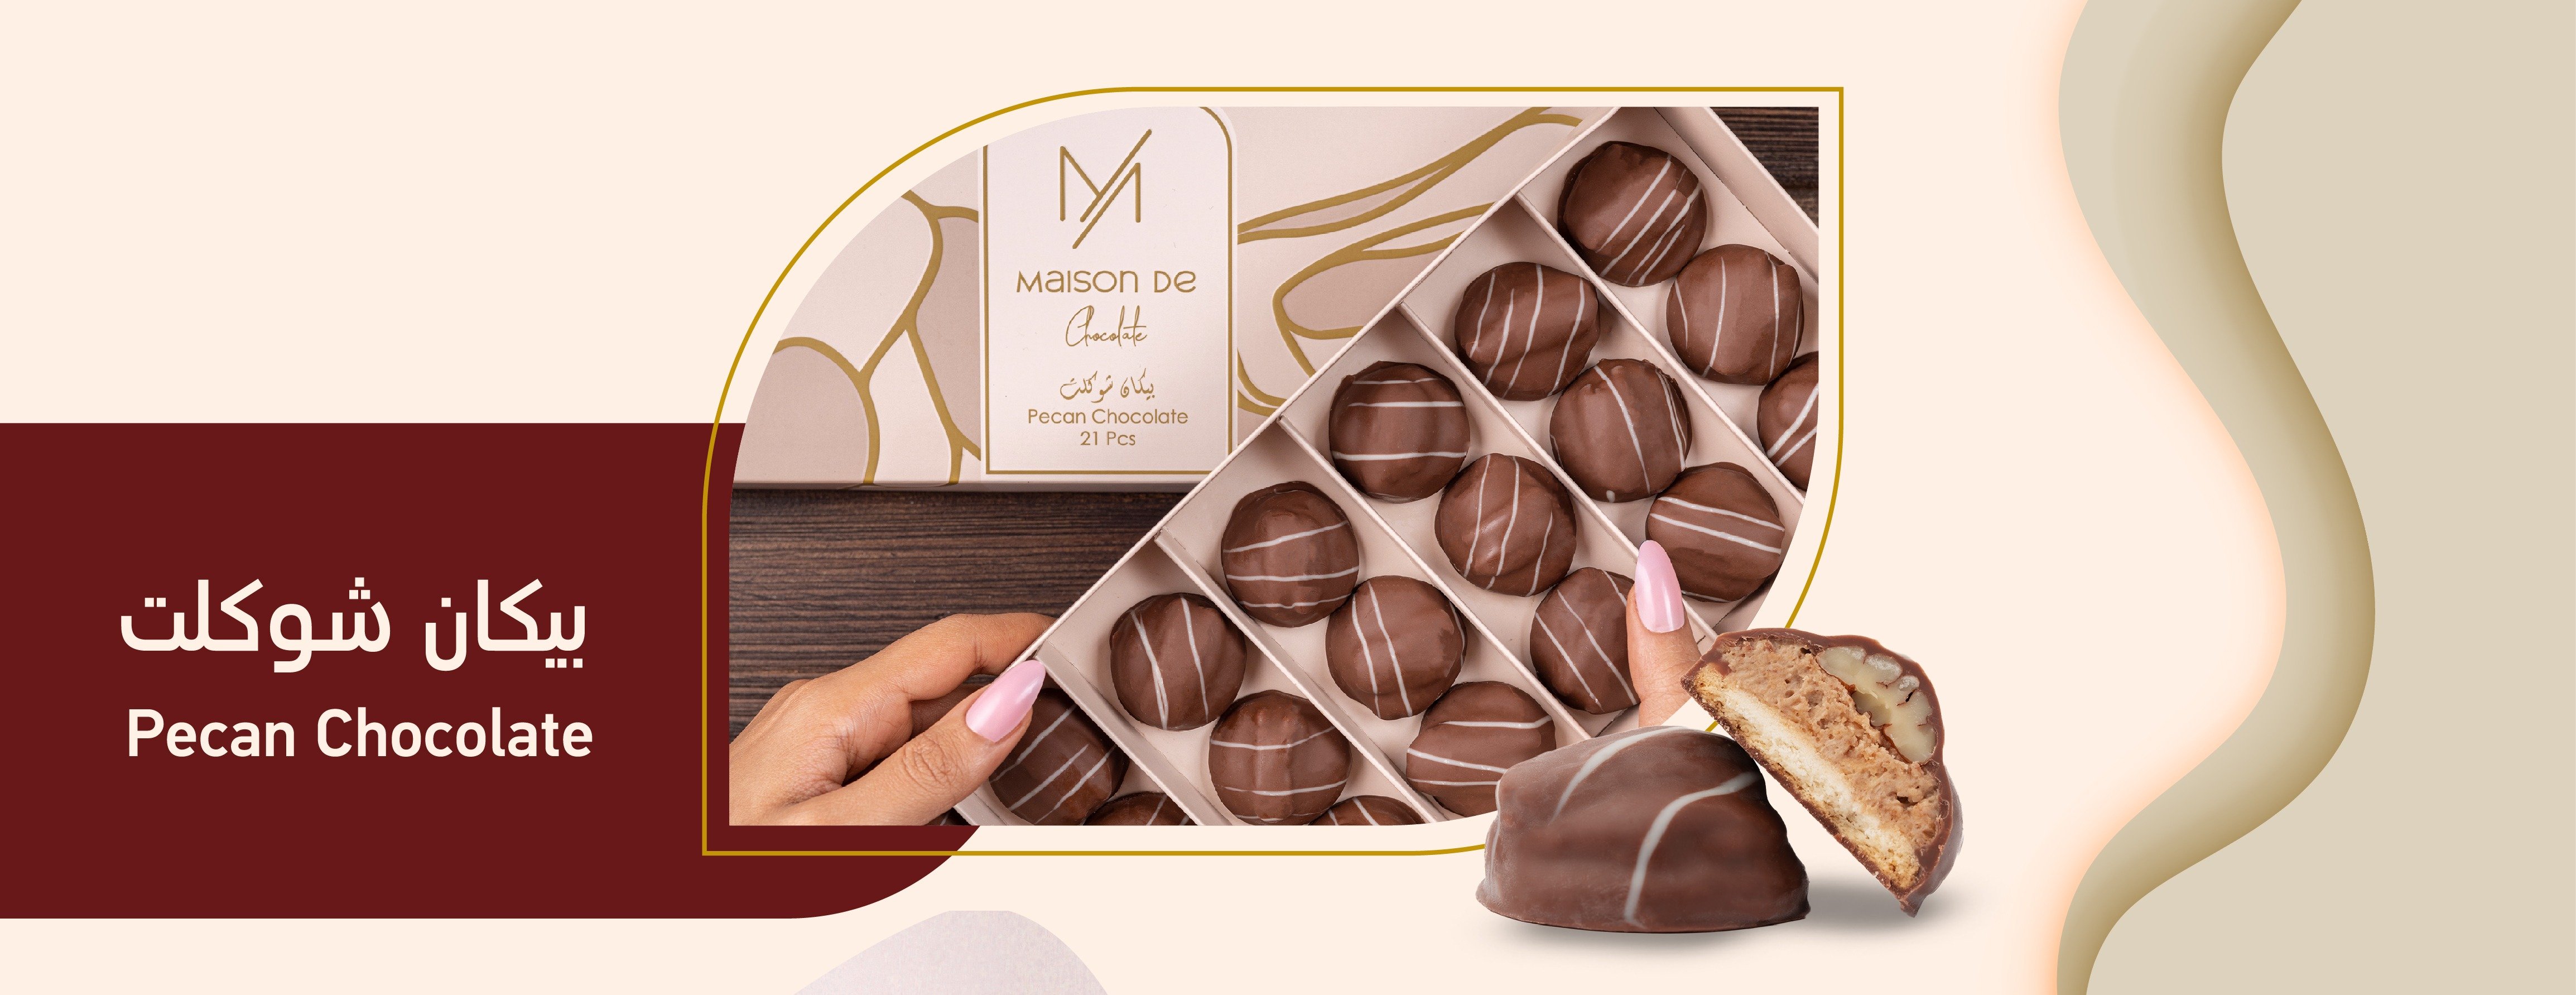 ميزون دي شوكلت - Maison De Chocolate image-slider-3